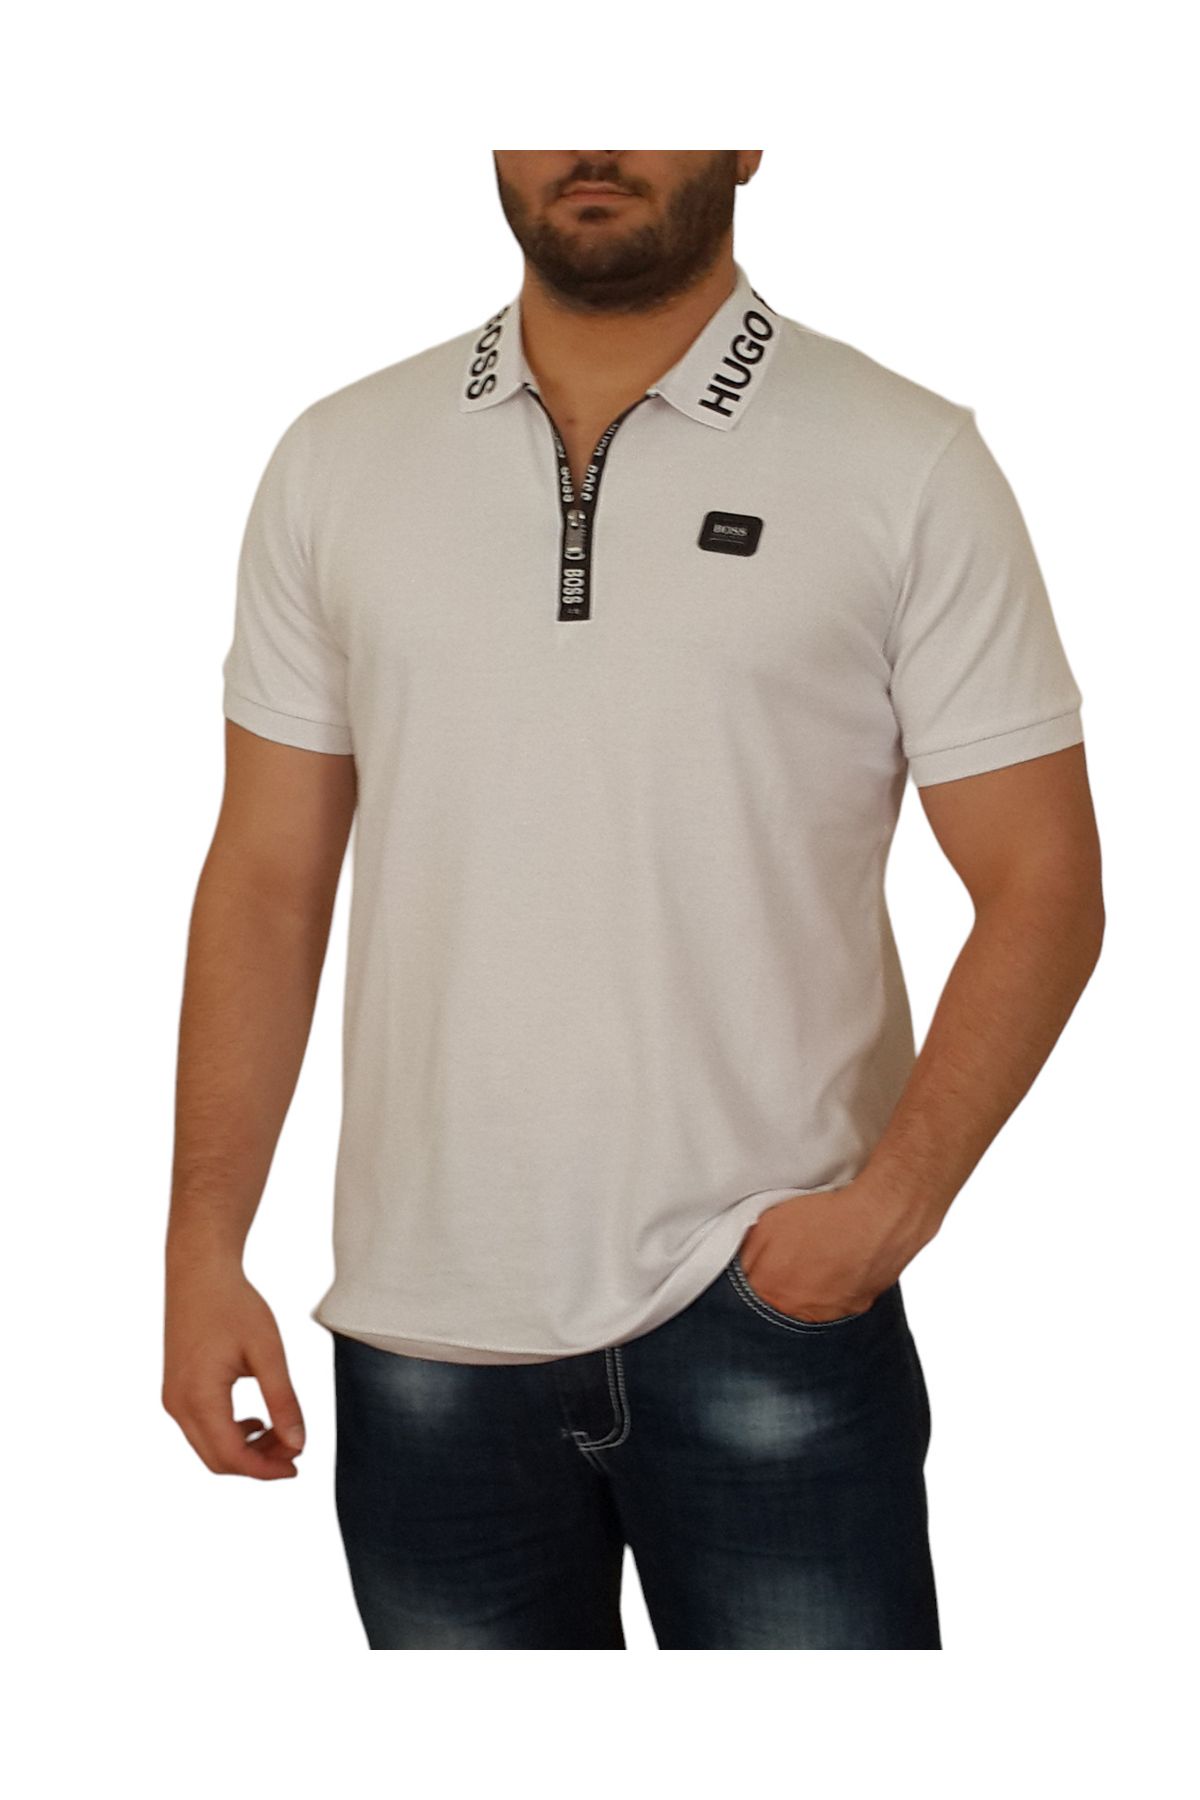 More Erkek Polo Yakalı Yakası Fermuarlı Kısa Kollu Beyaz Pamuklu Tişört